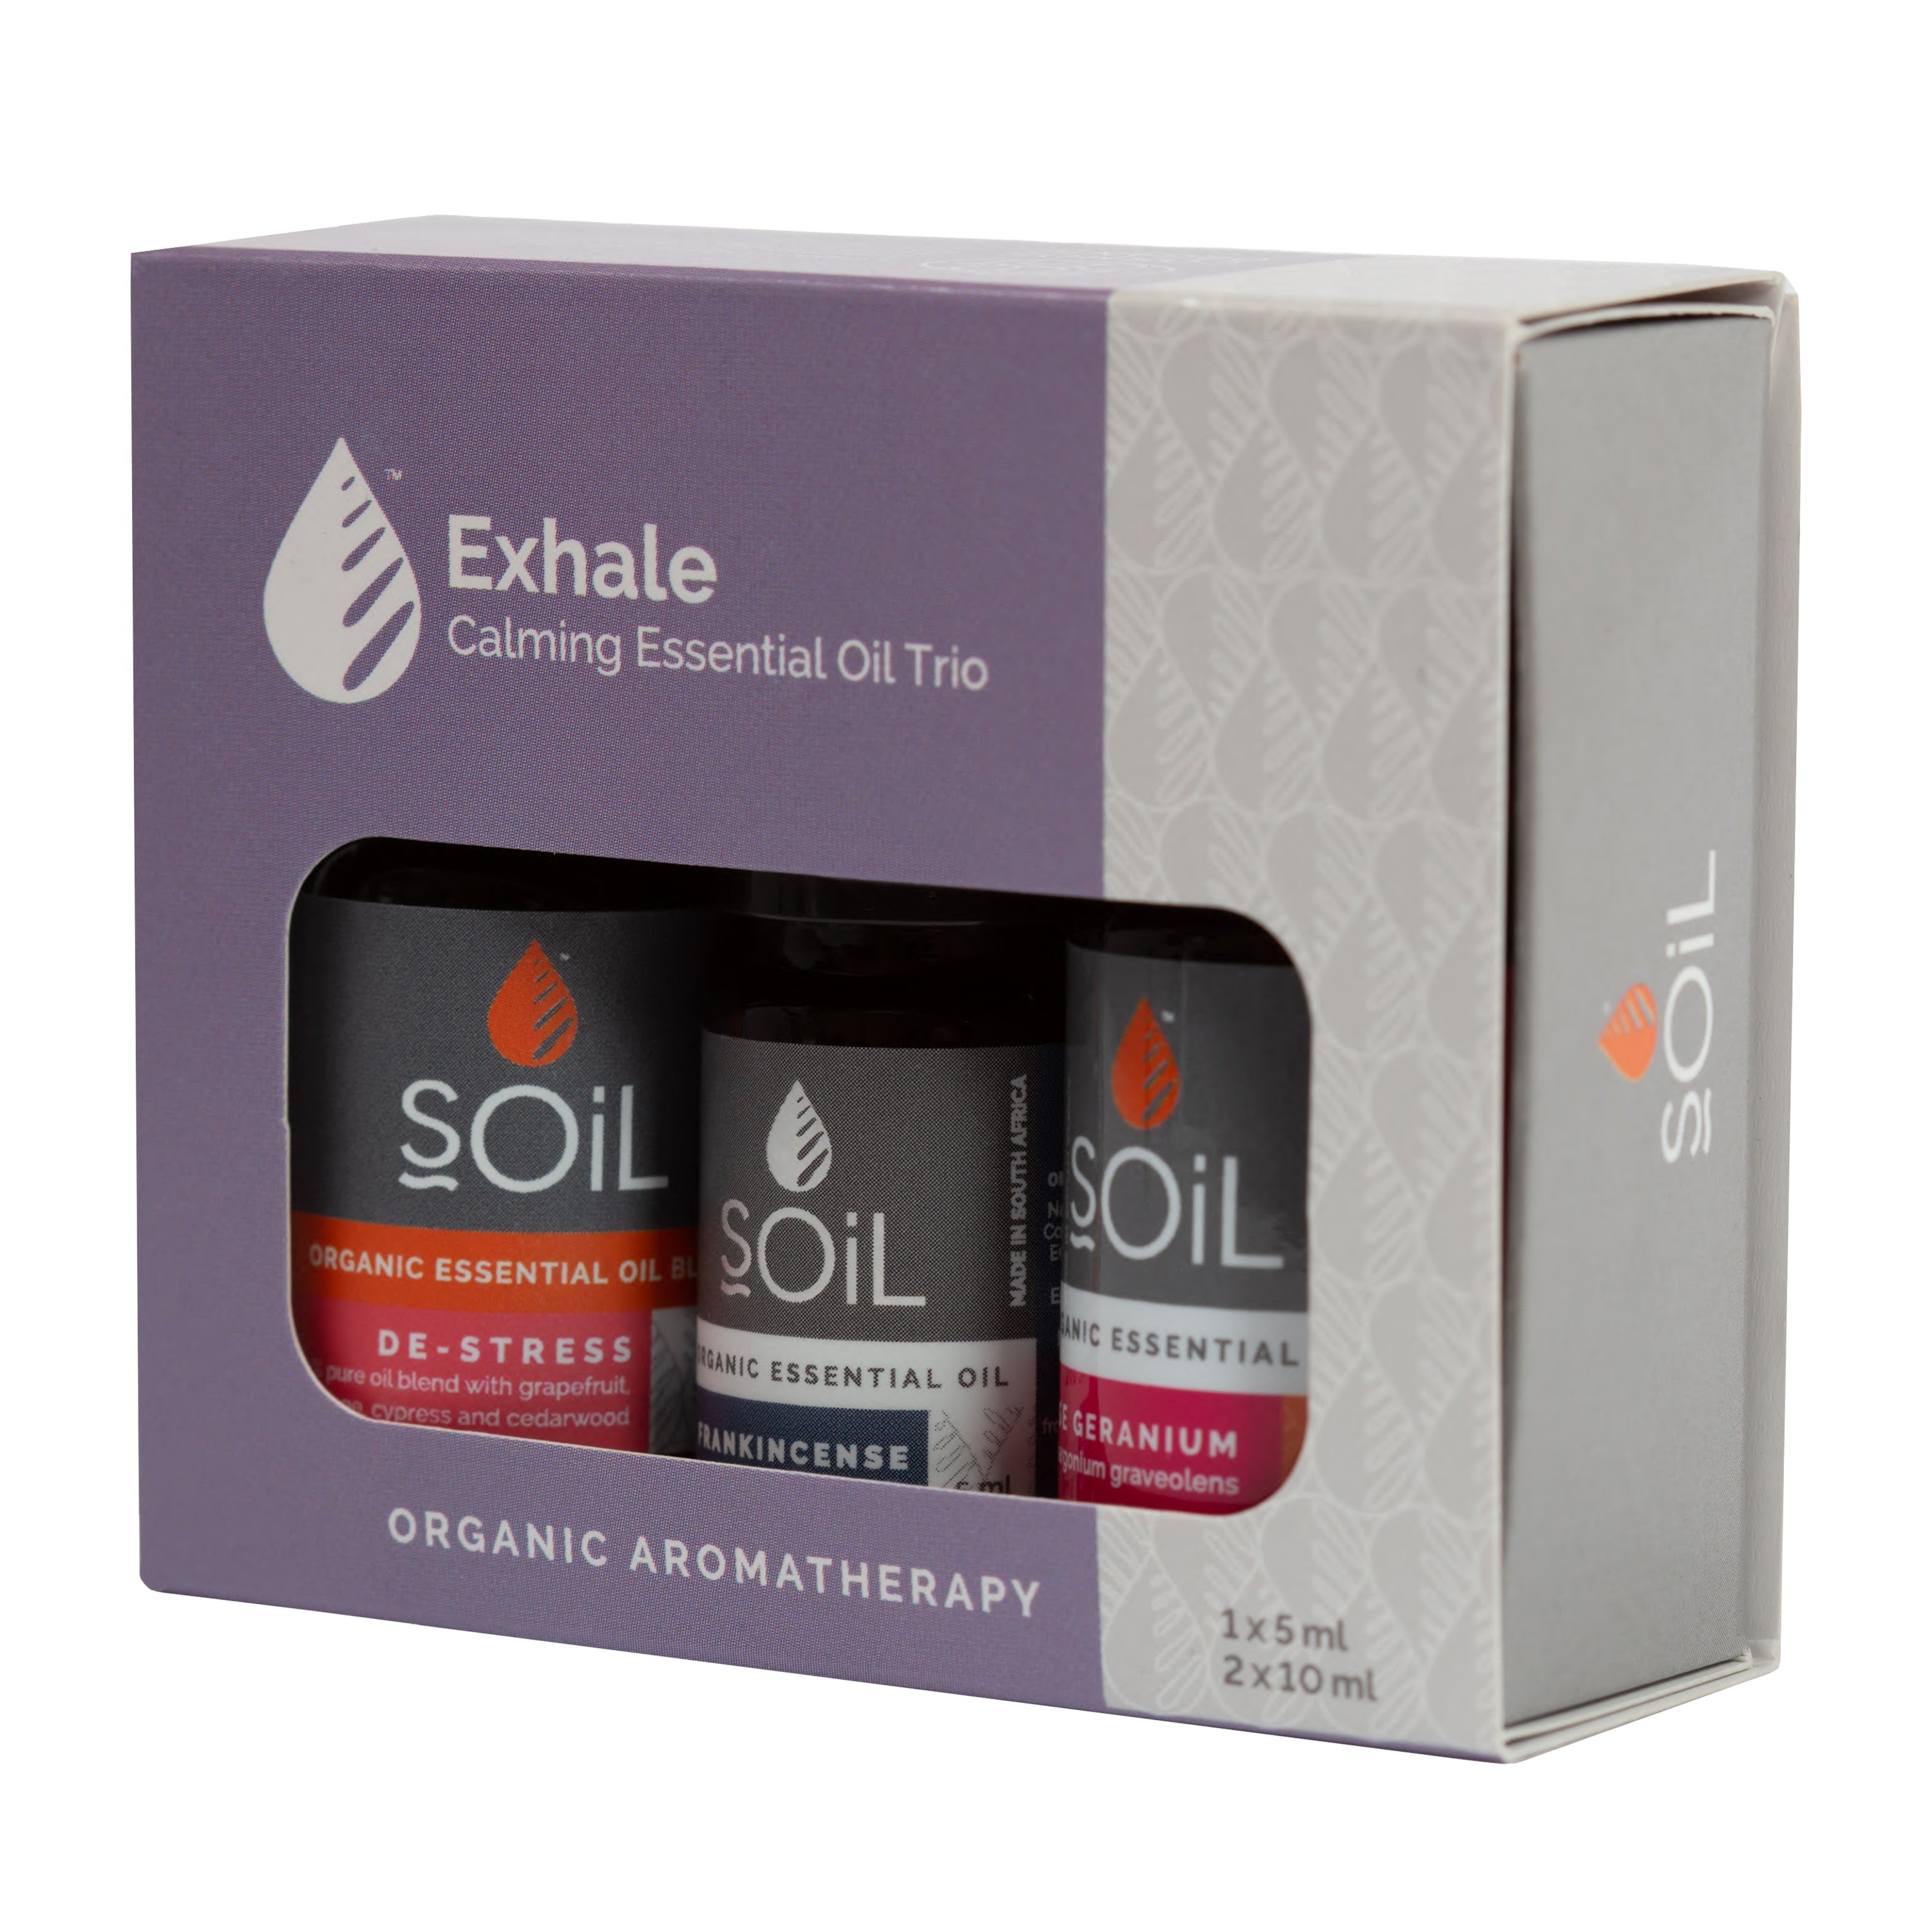 SOiL Exhale Organic Essential Oil Trio Soil Organic Aromatherapy 